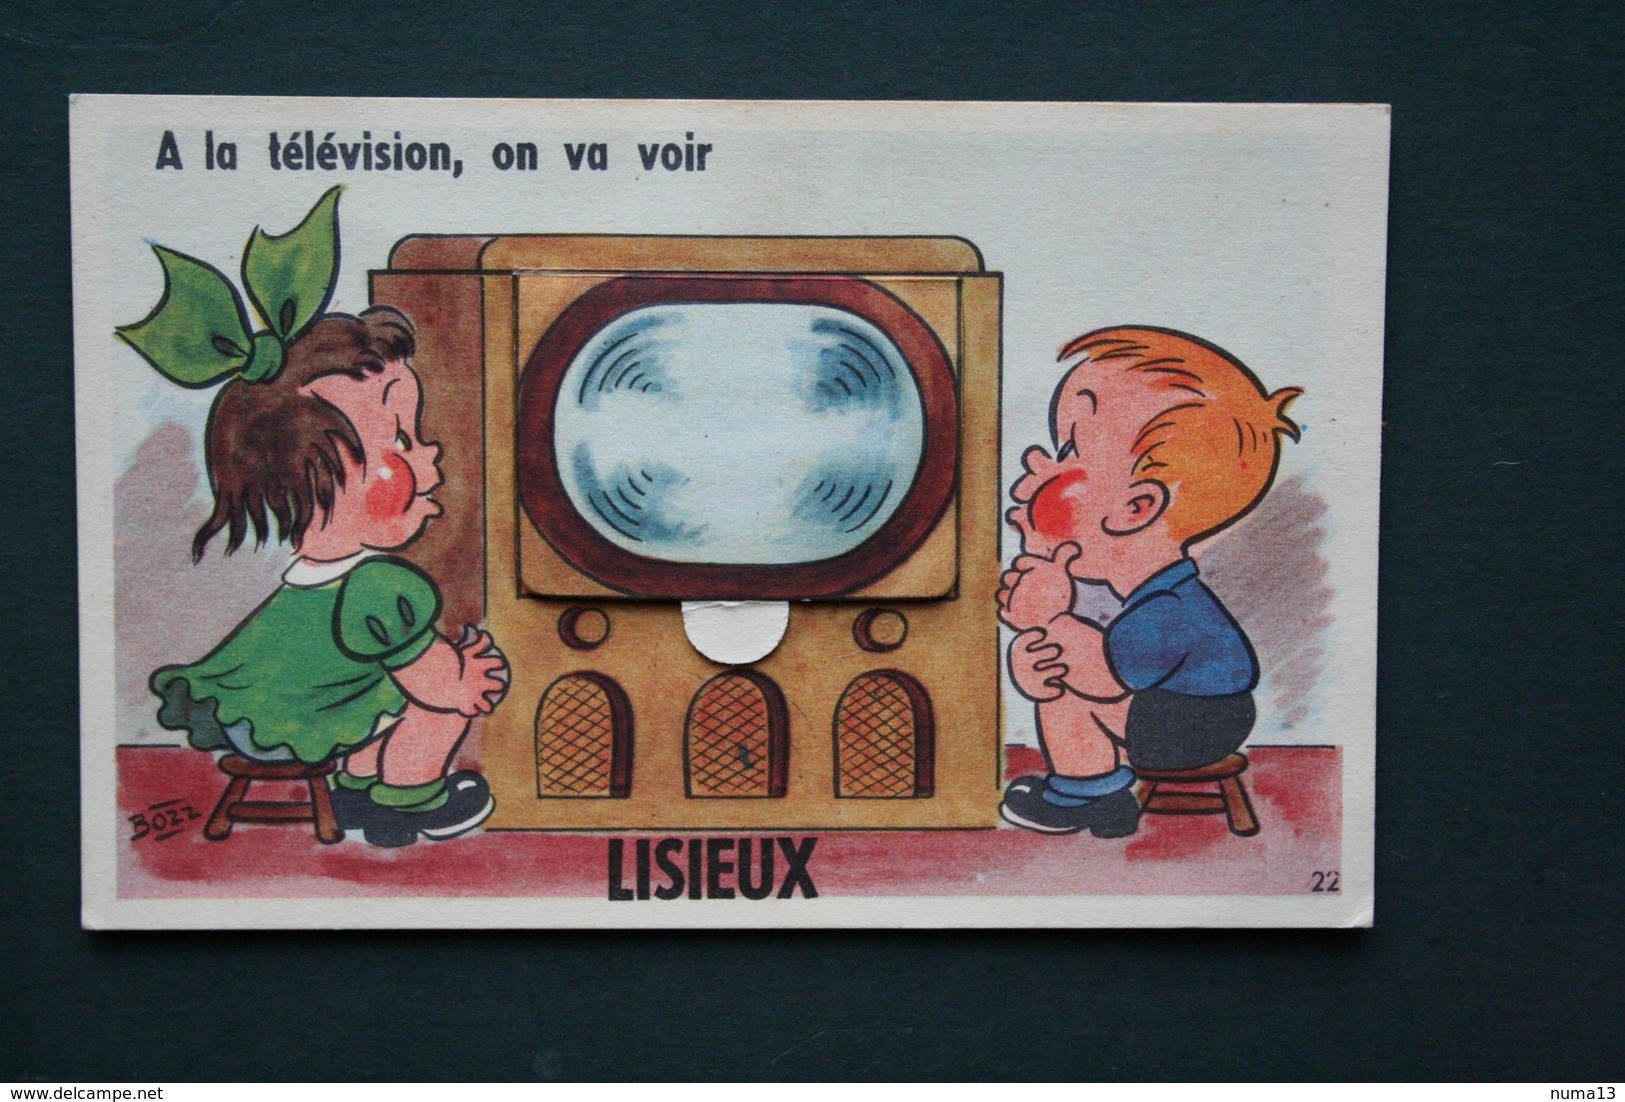 14 CALVADOS LIXIEUX CARTE A SYSTEME A LA TELEVISION ON VA VOIR ILLUSTRATION BOZZ 1954 - Lisieux